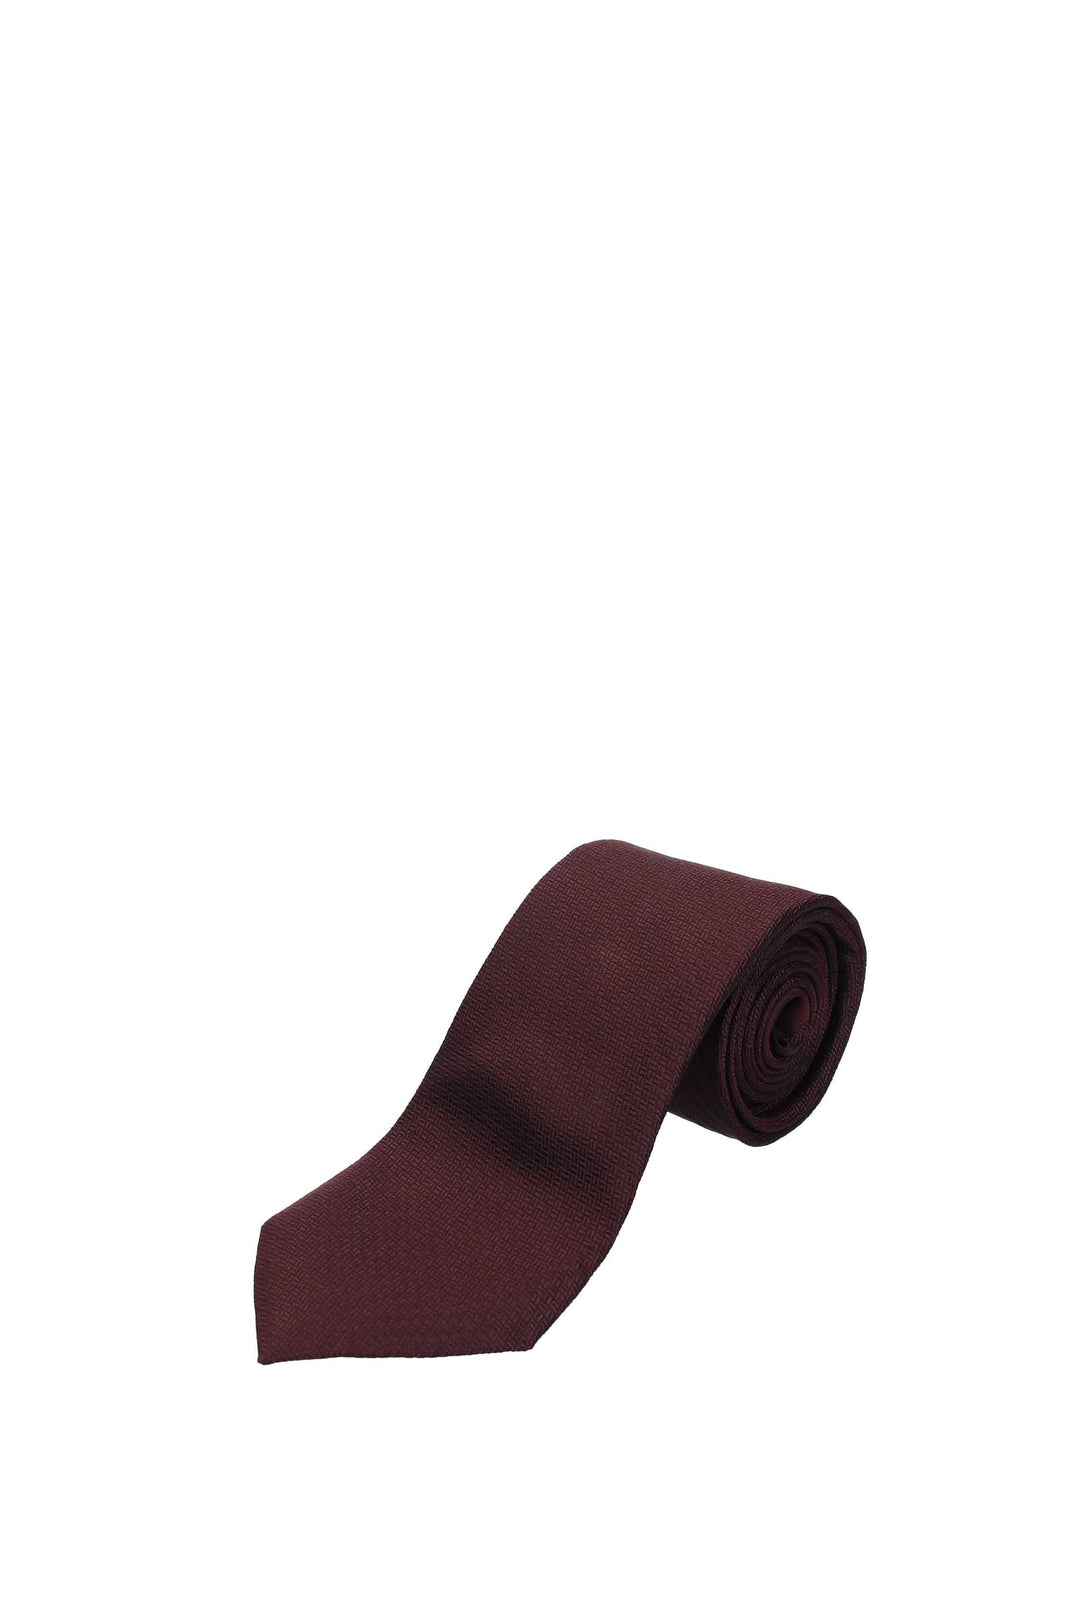 Cravatte Seta Rosso Vino - Zegna - Uomo